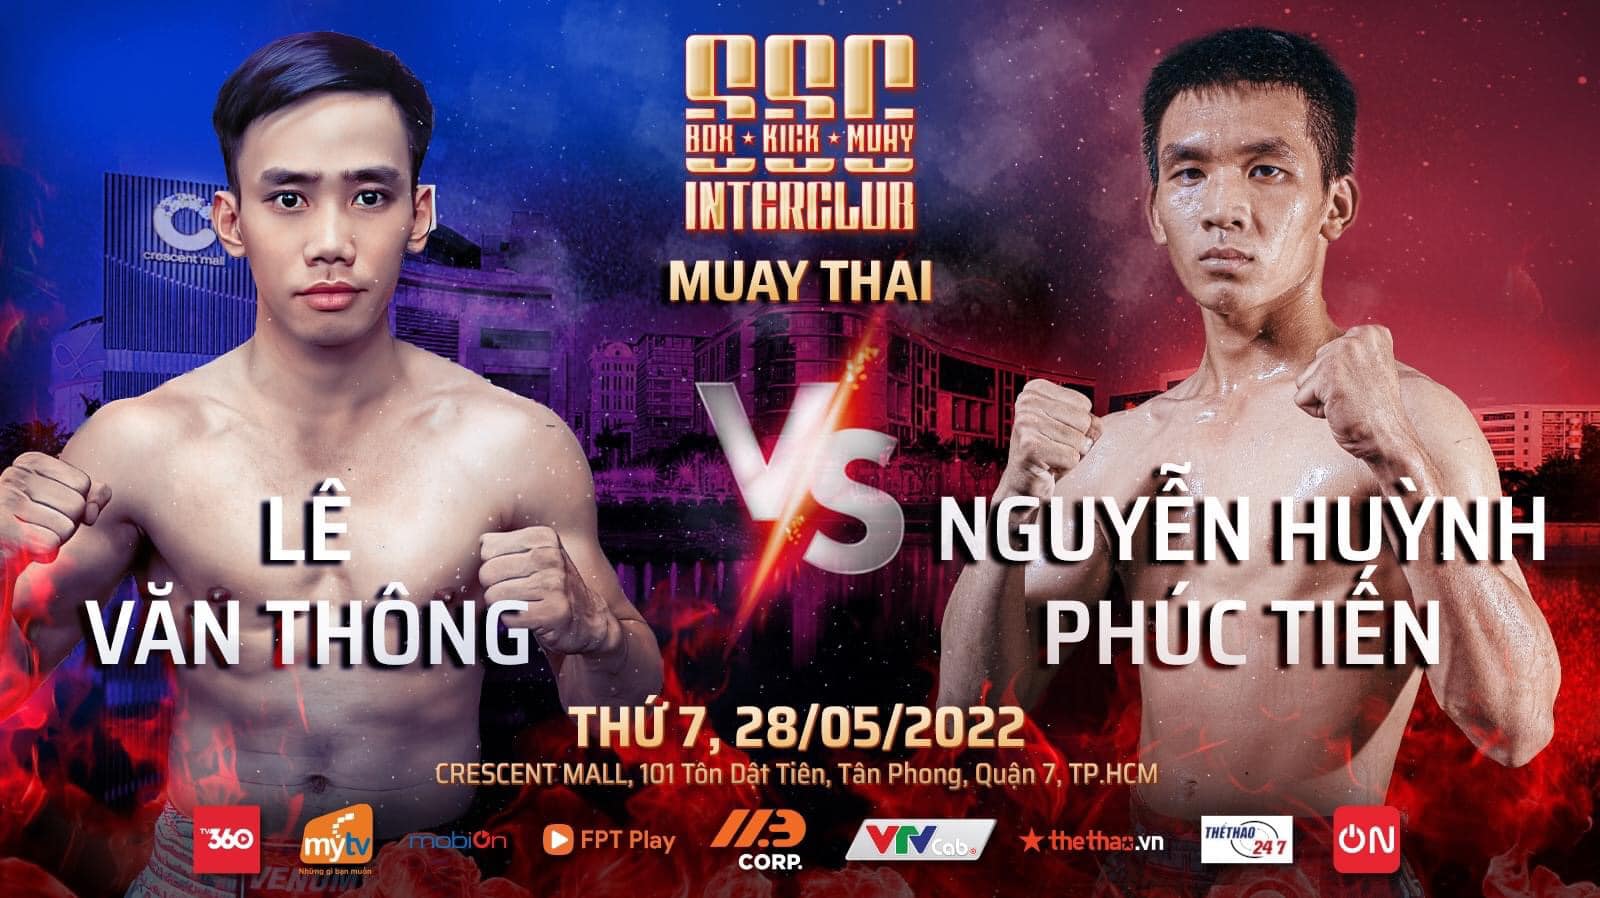 Sự kiện 3 môn võ Boxing, Kickboxing, Muay Thái tổ chức ở TPHCM ngày 28/5 - Ảnh 5